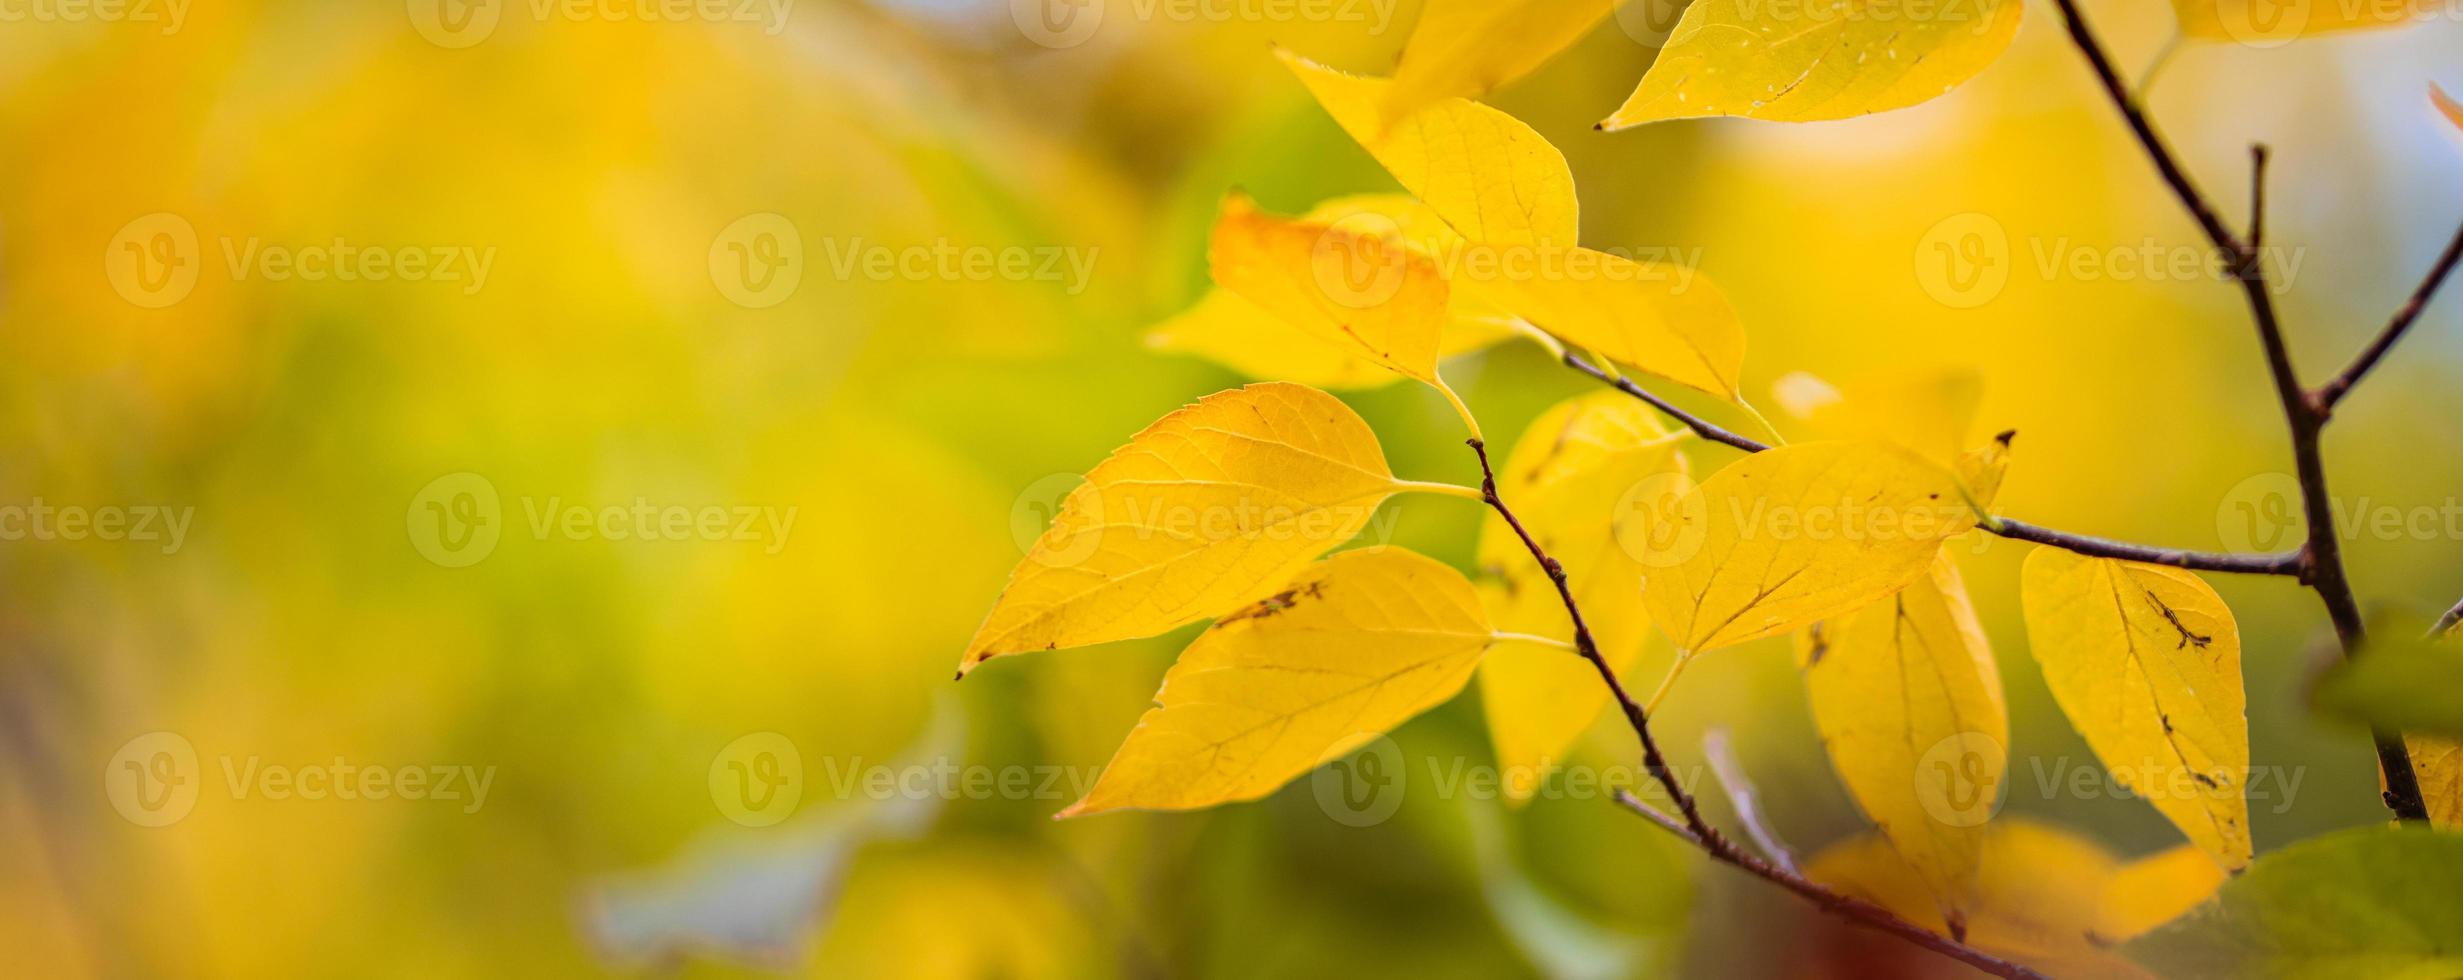 belles feuilles en automne journée ensoleillée abstrait arrière-plan flou. feuillage naturel saisonnier en gros plan. concept d'automne en plein air de soirée artistique. rayons de soleil doux soleil, arbre jaune doré. photo